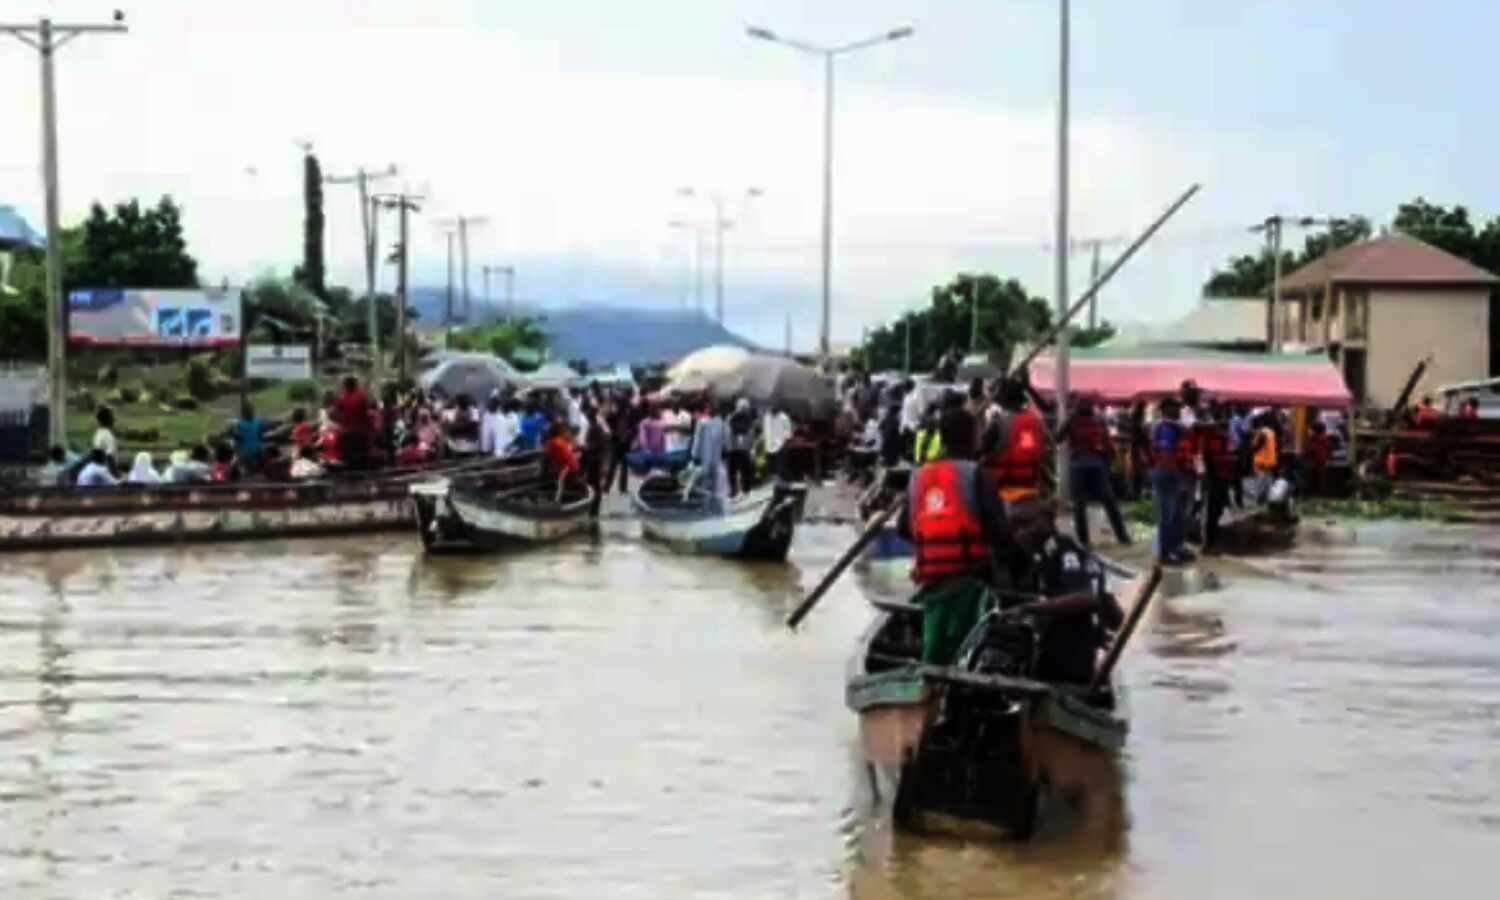 Nigeria News : नाइजीरिया में 85 यात्रियों को लेकर जा रही नाव पलटी, 76 लोगों की मौत, रेस्क्यू ऑपरेशन जारी